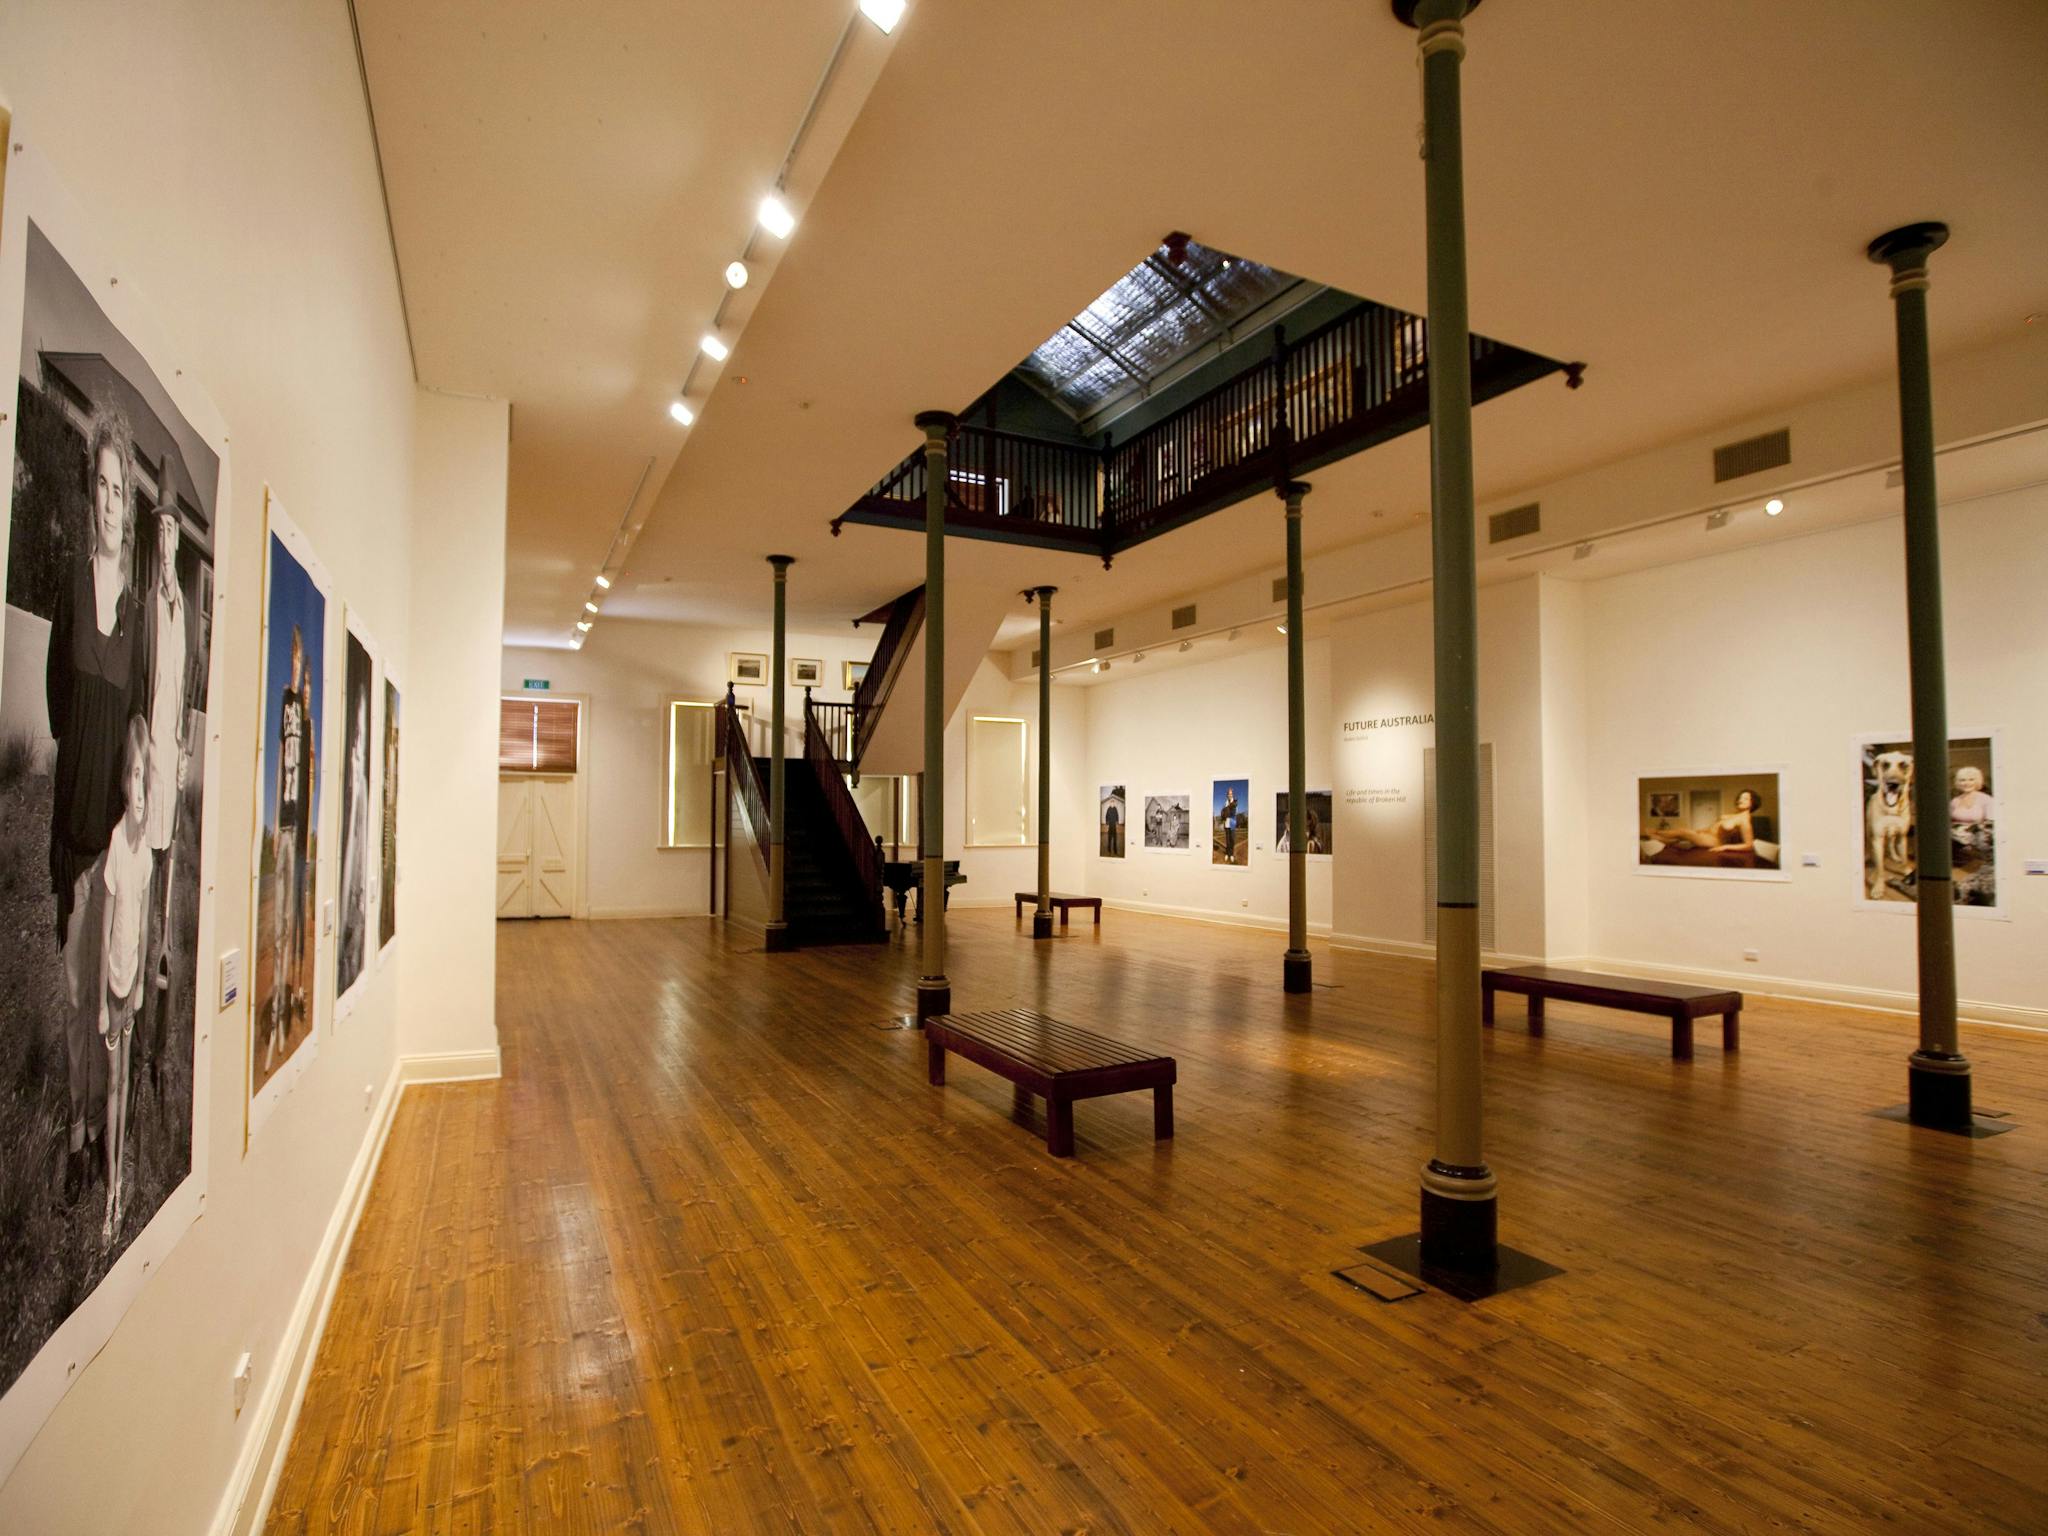 Broken Hill Regional Art Gallery